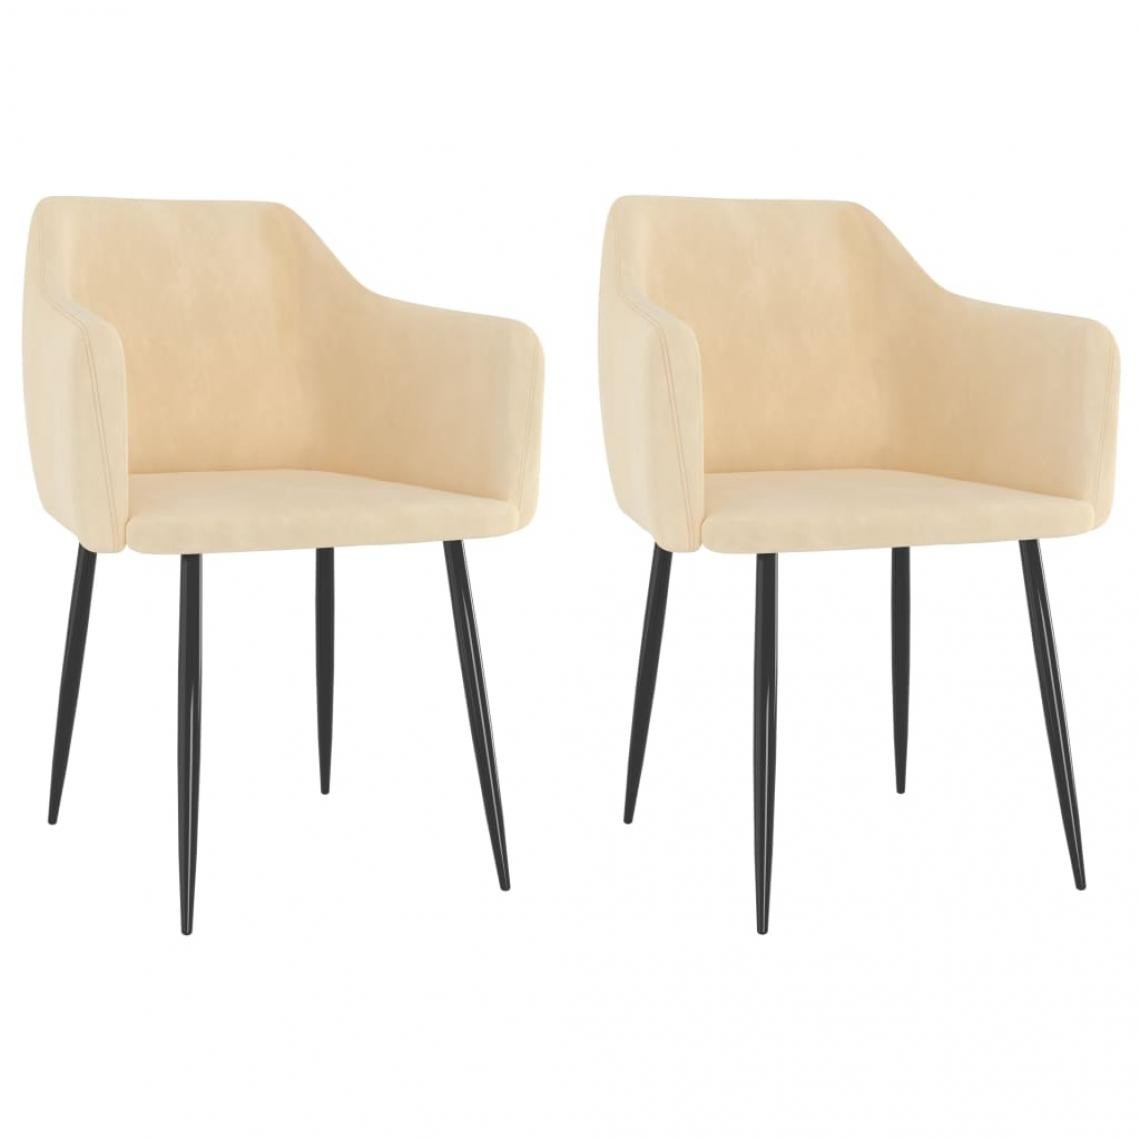 Decoshop26 - Lot de 2 chaises de salle à manger cuisine design moderne velours crème CDS020458 - Chaises